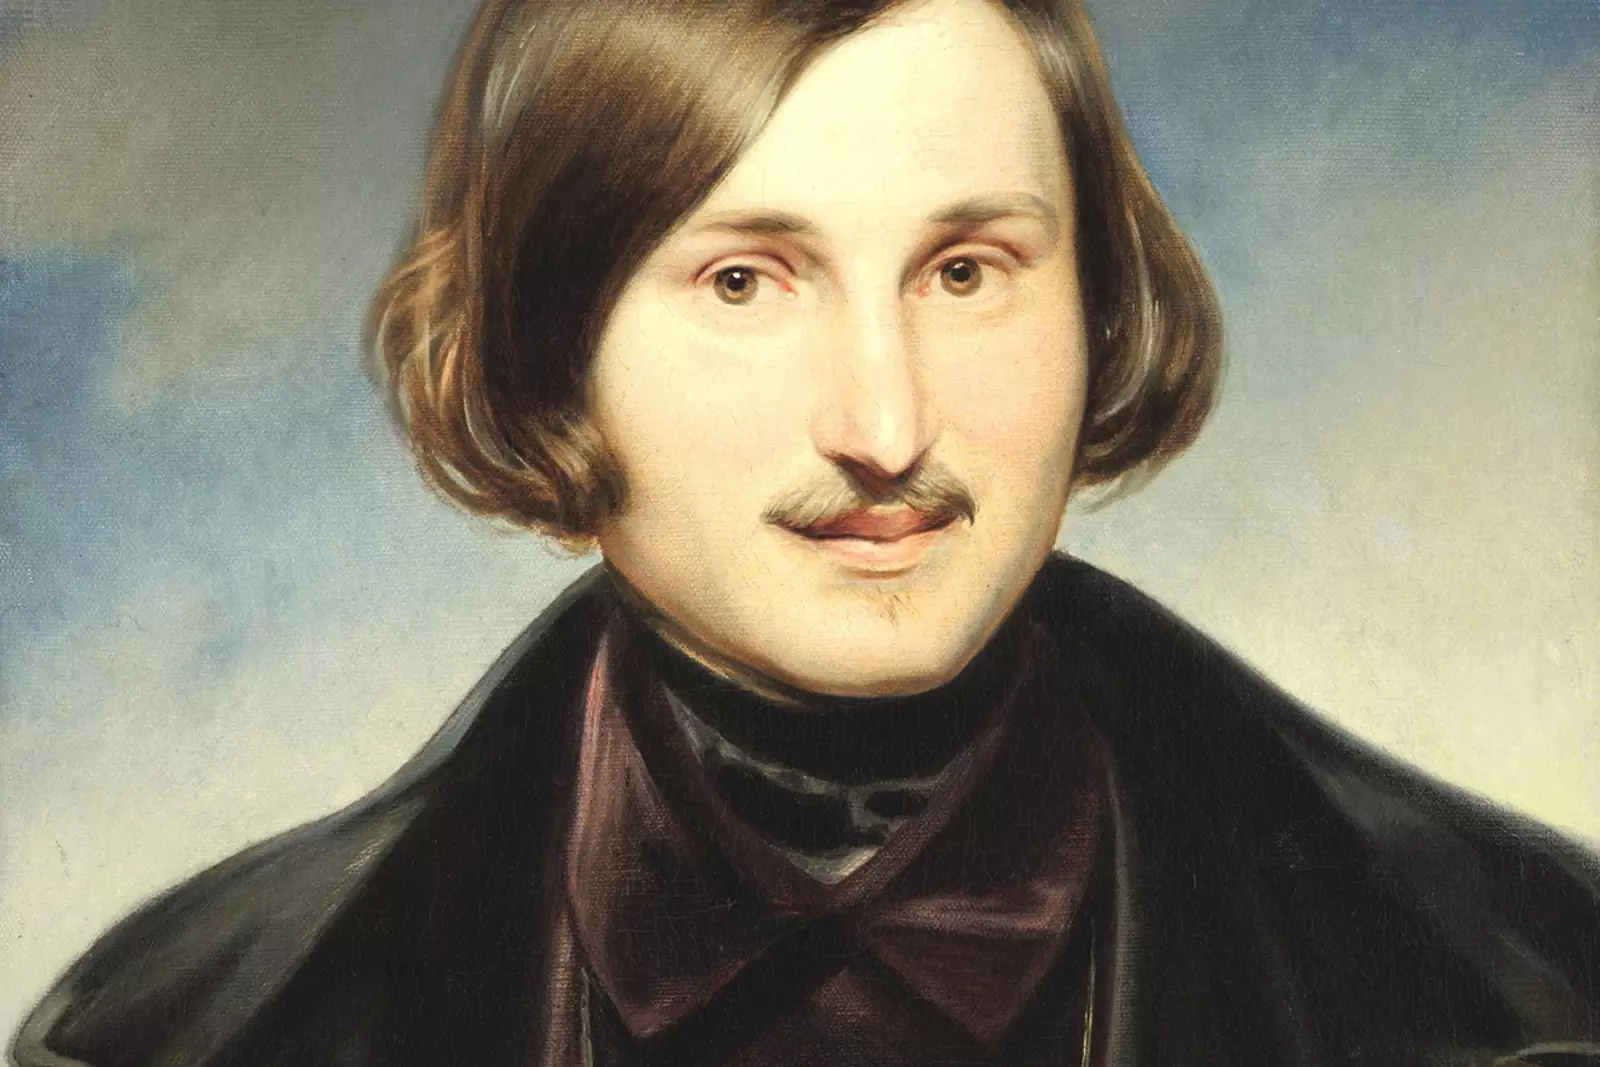 Н. В. Гоголь, портрет кисти Ф. Моллера (1840, Третьяковская галерея)